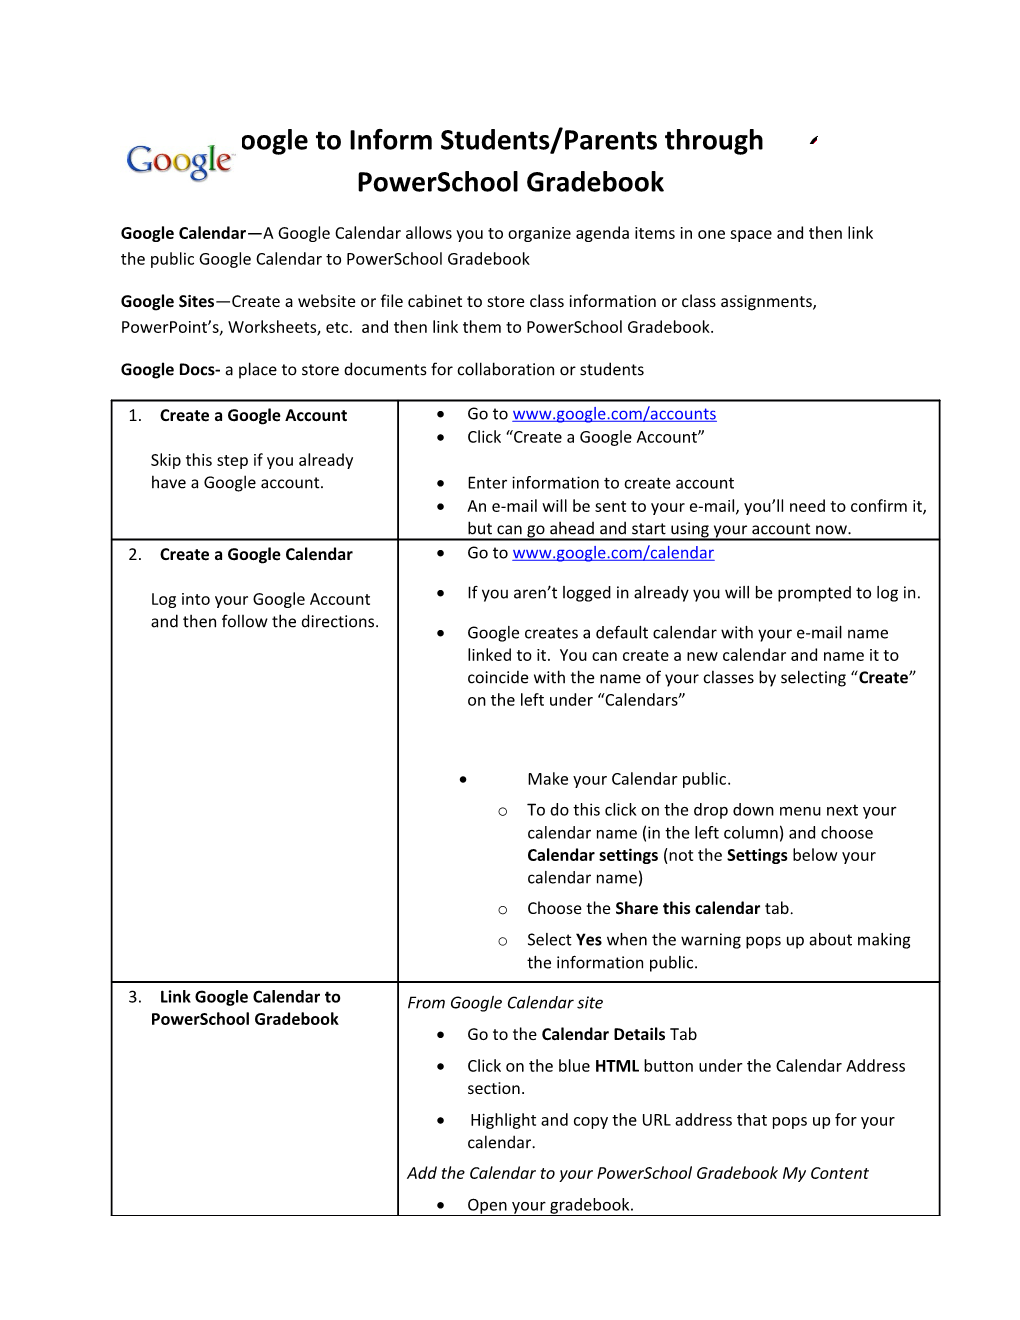 Using Google to Inform Students/Parents Through Powerschool Gradebook